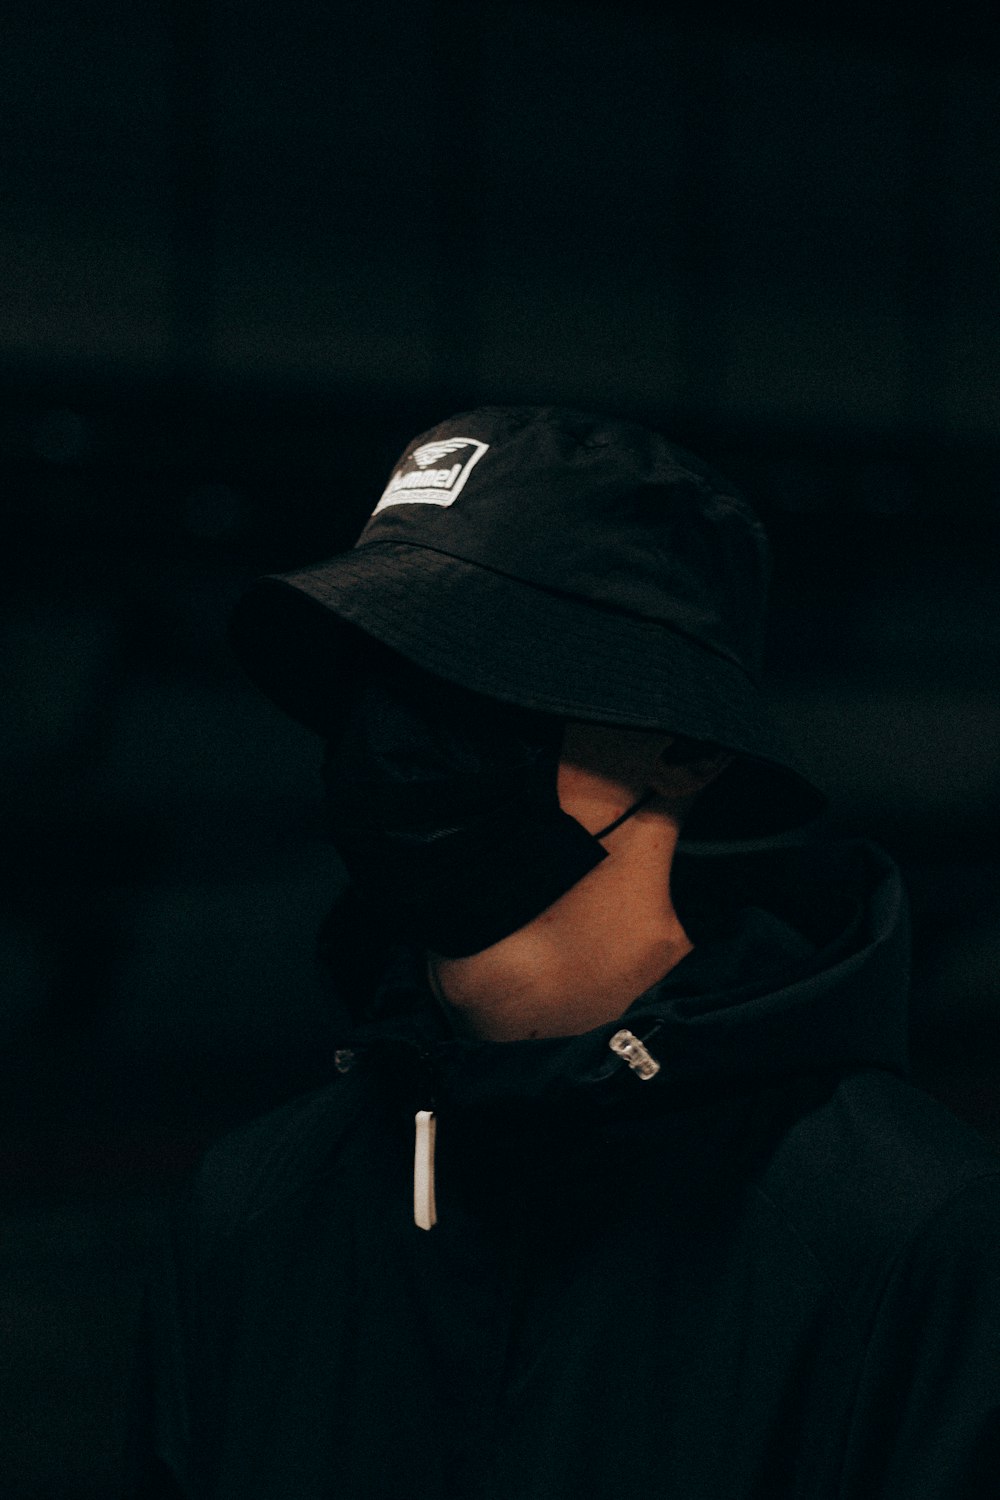 man in black hoodie wearing black cap photo – Free France Image on Unsplash